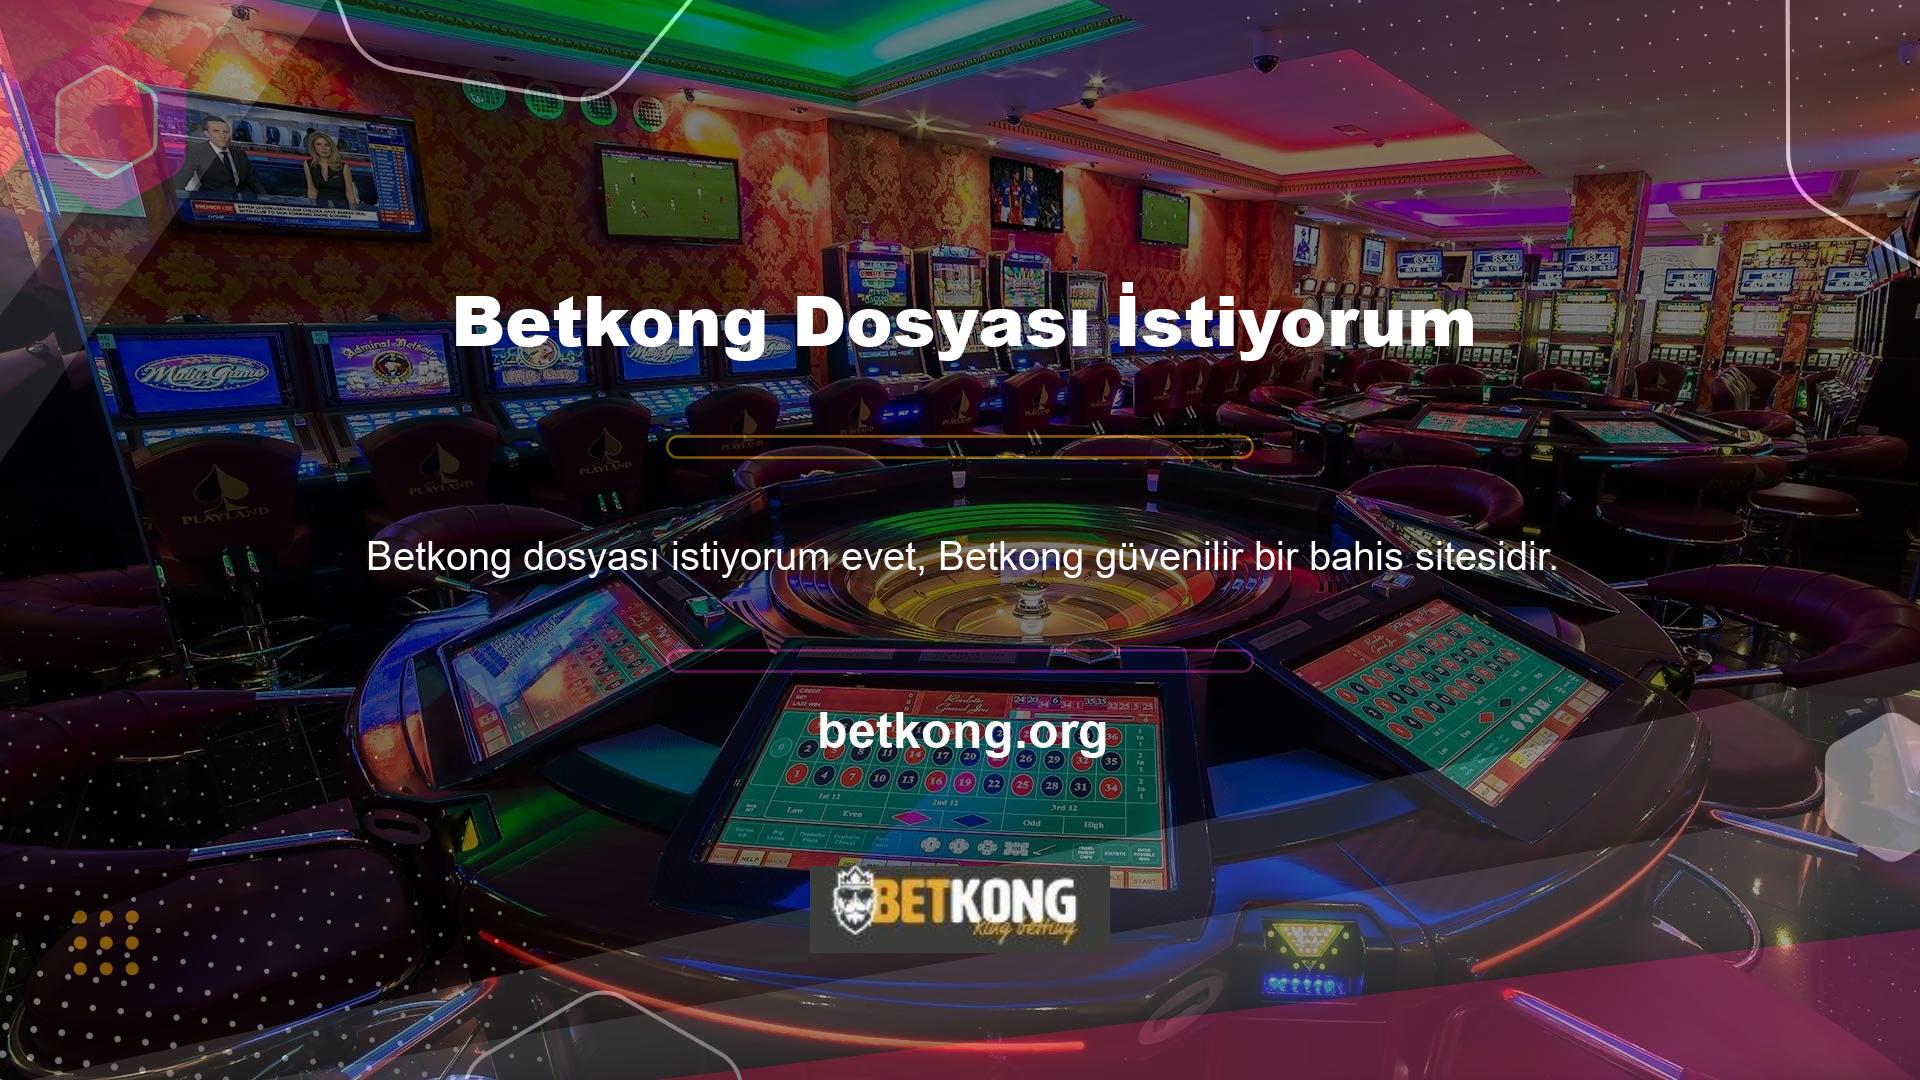 Betkong, kurulduğu günden bu yana müşteri memnuniyeti odaklı olarak bu yönde gelişen bir canlı bahis sitesidir